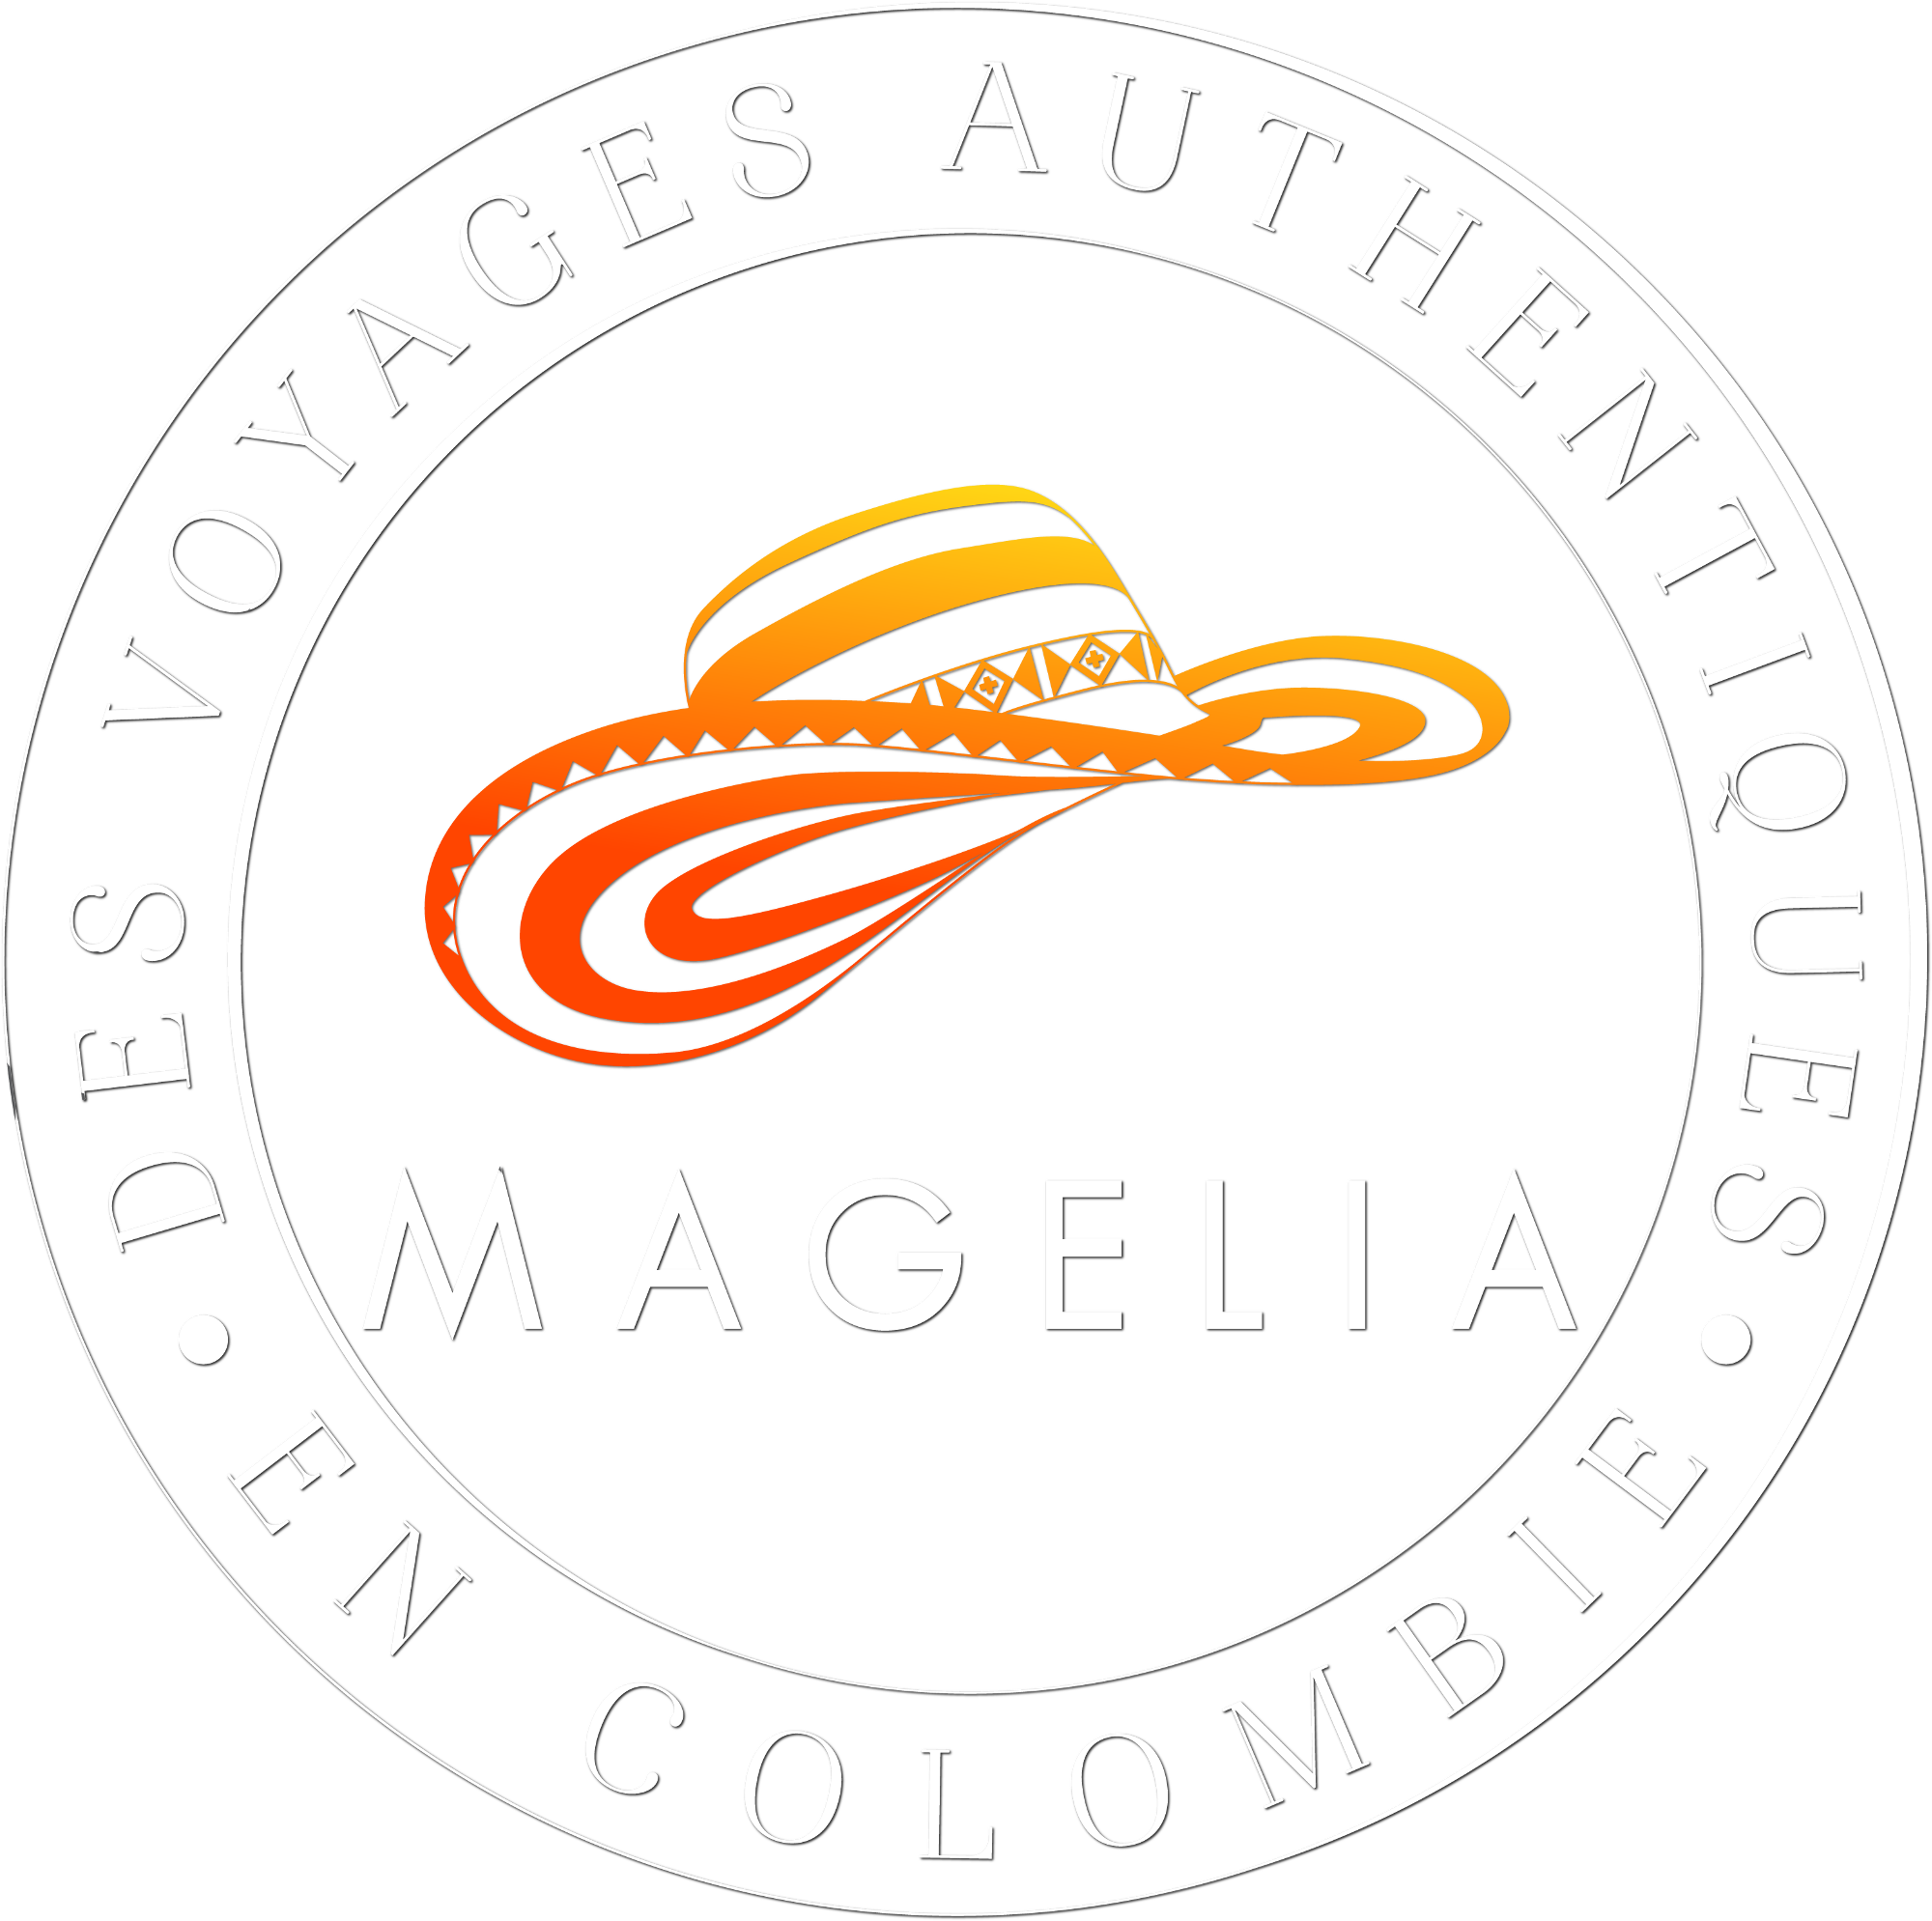 Magelia, des voyage authentique en Colombie